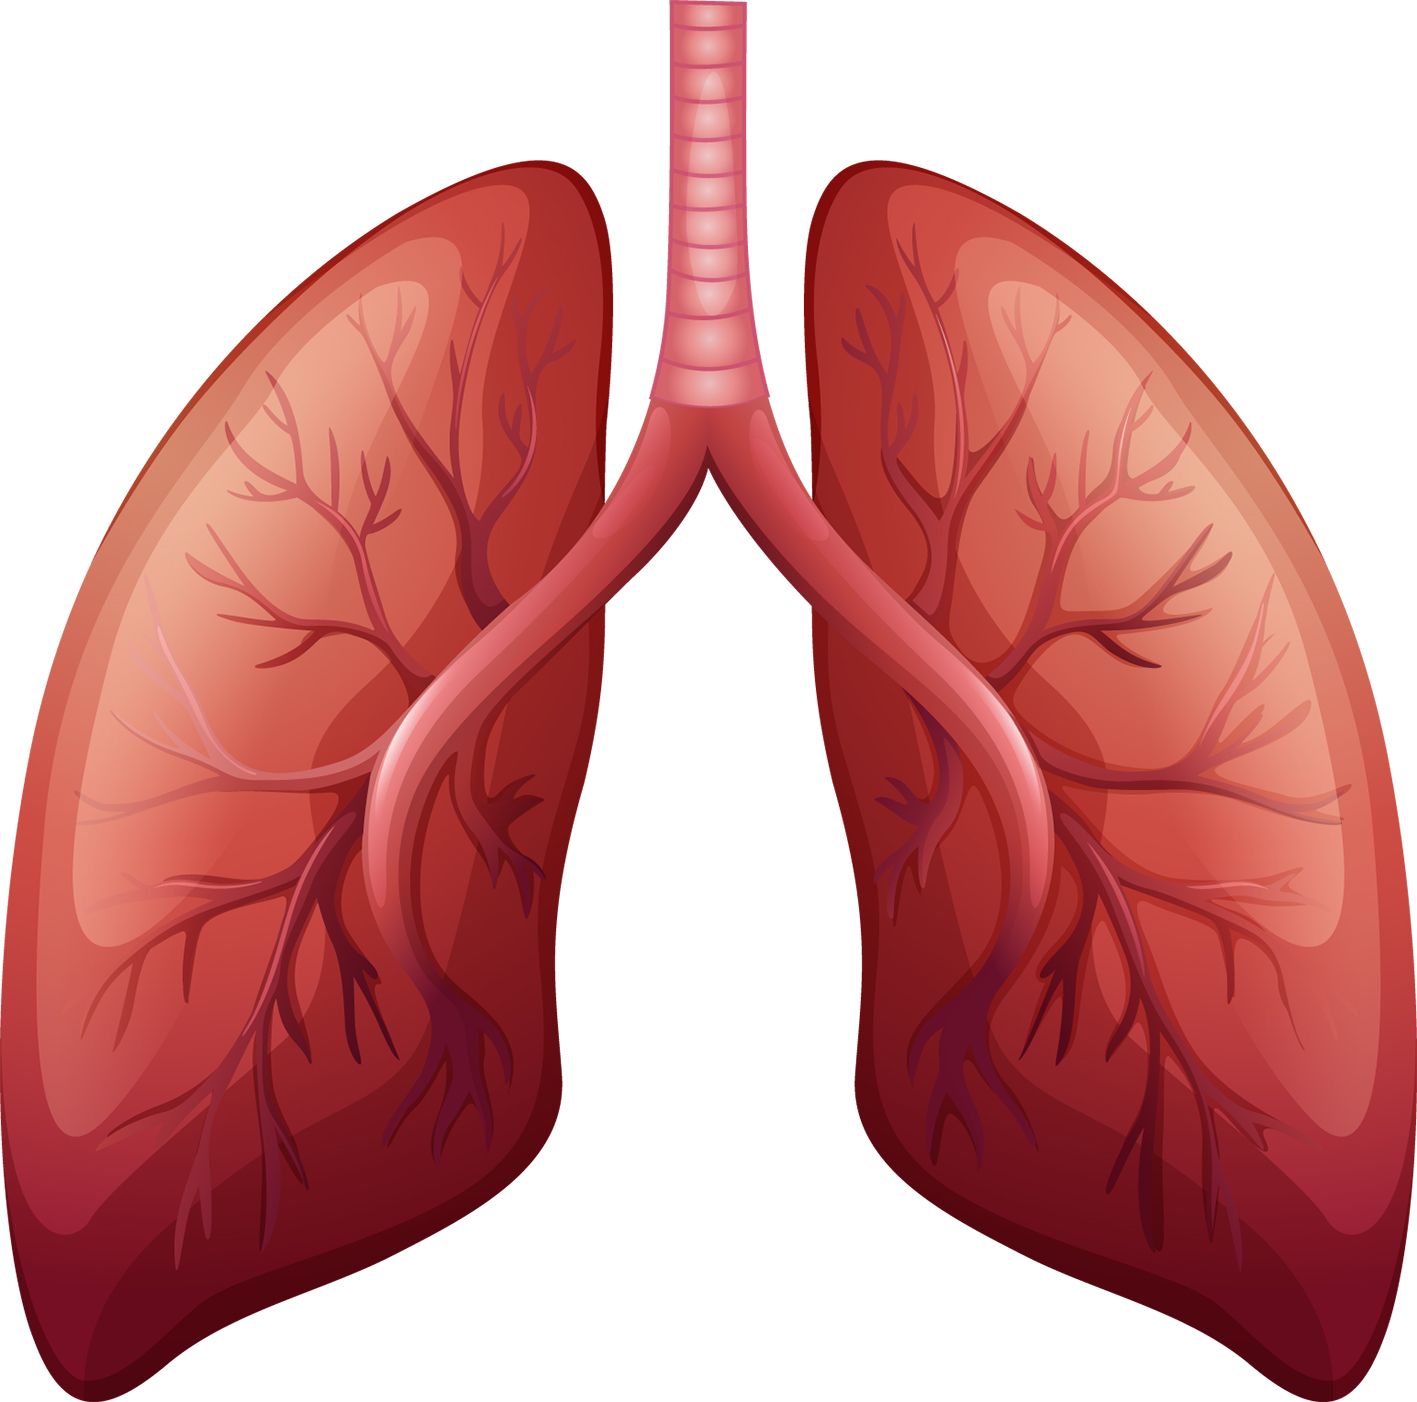 Tehnică promiţătoare pentru hipertensiunea pulmonară